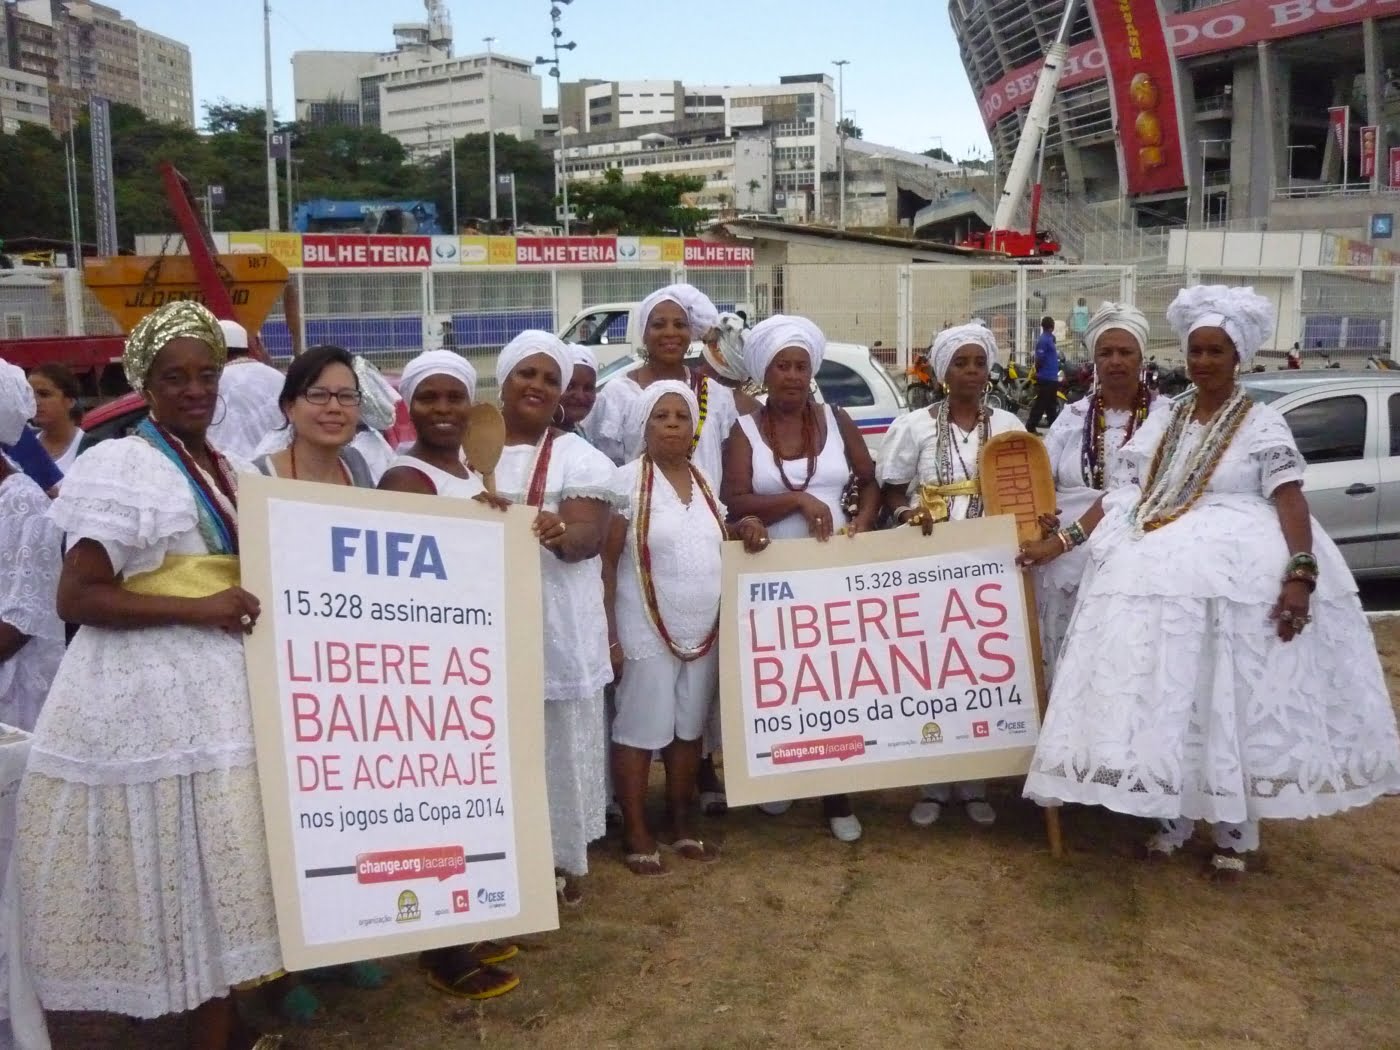 Mais de 15 mil assinaram pela liberação da venda de acarajé na Fonte Nova. Deu certo